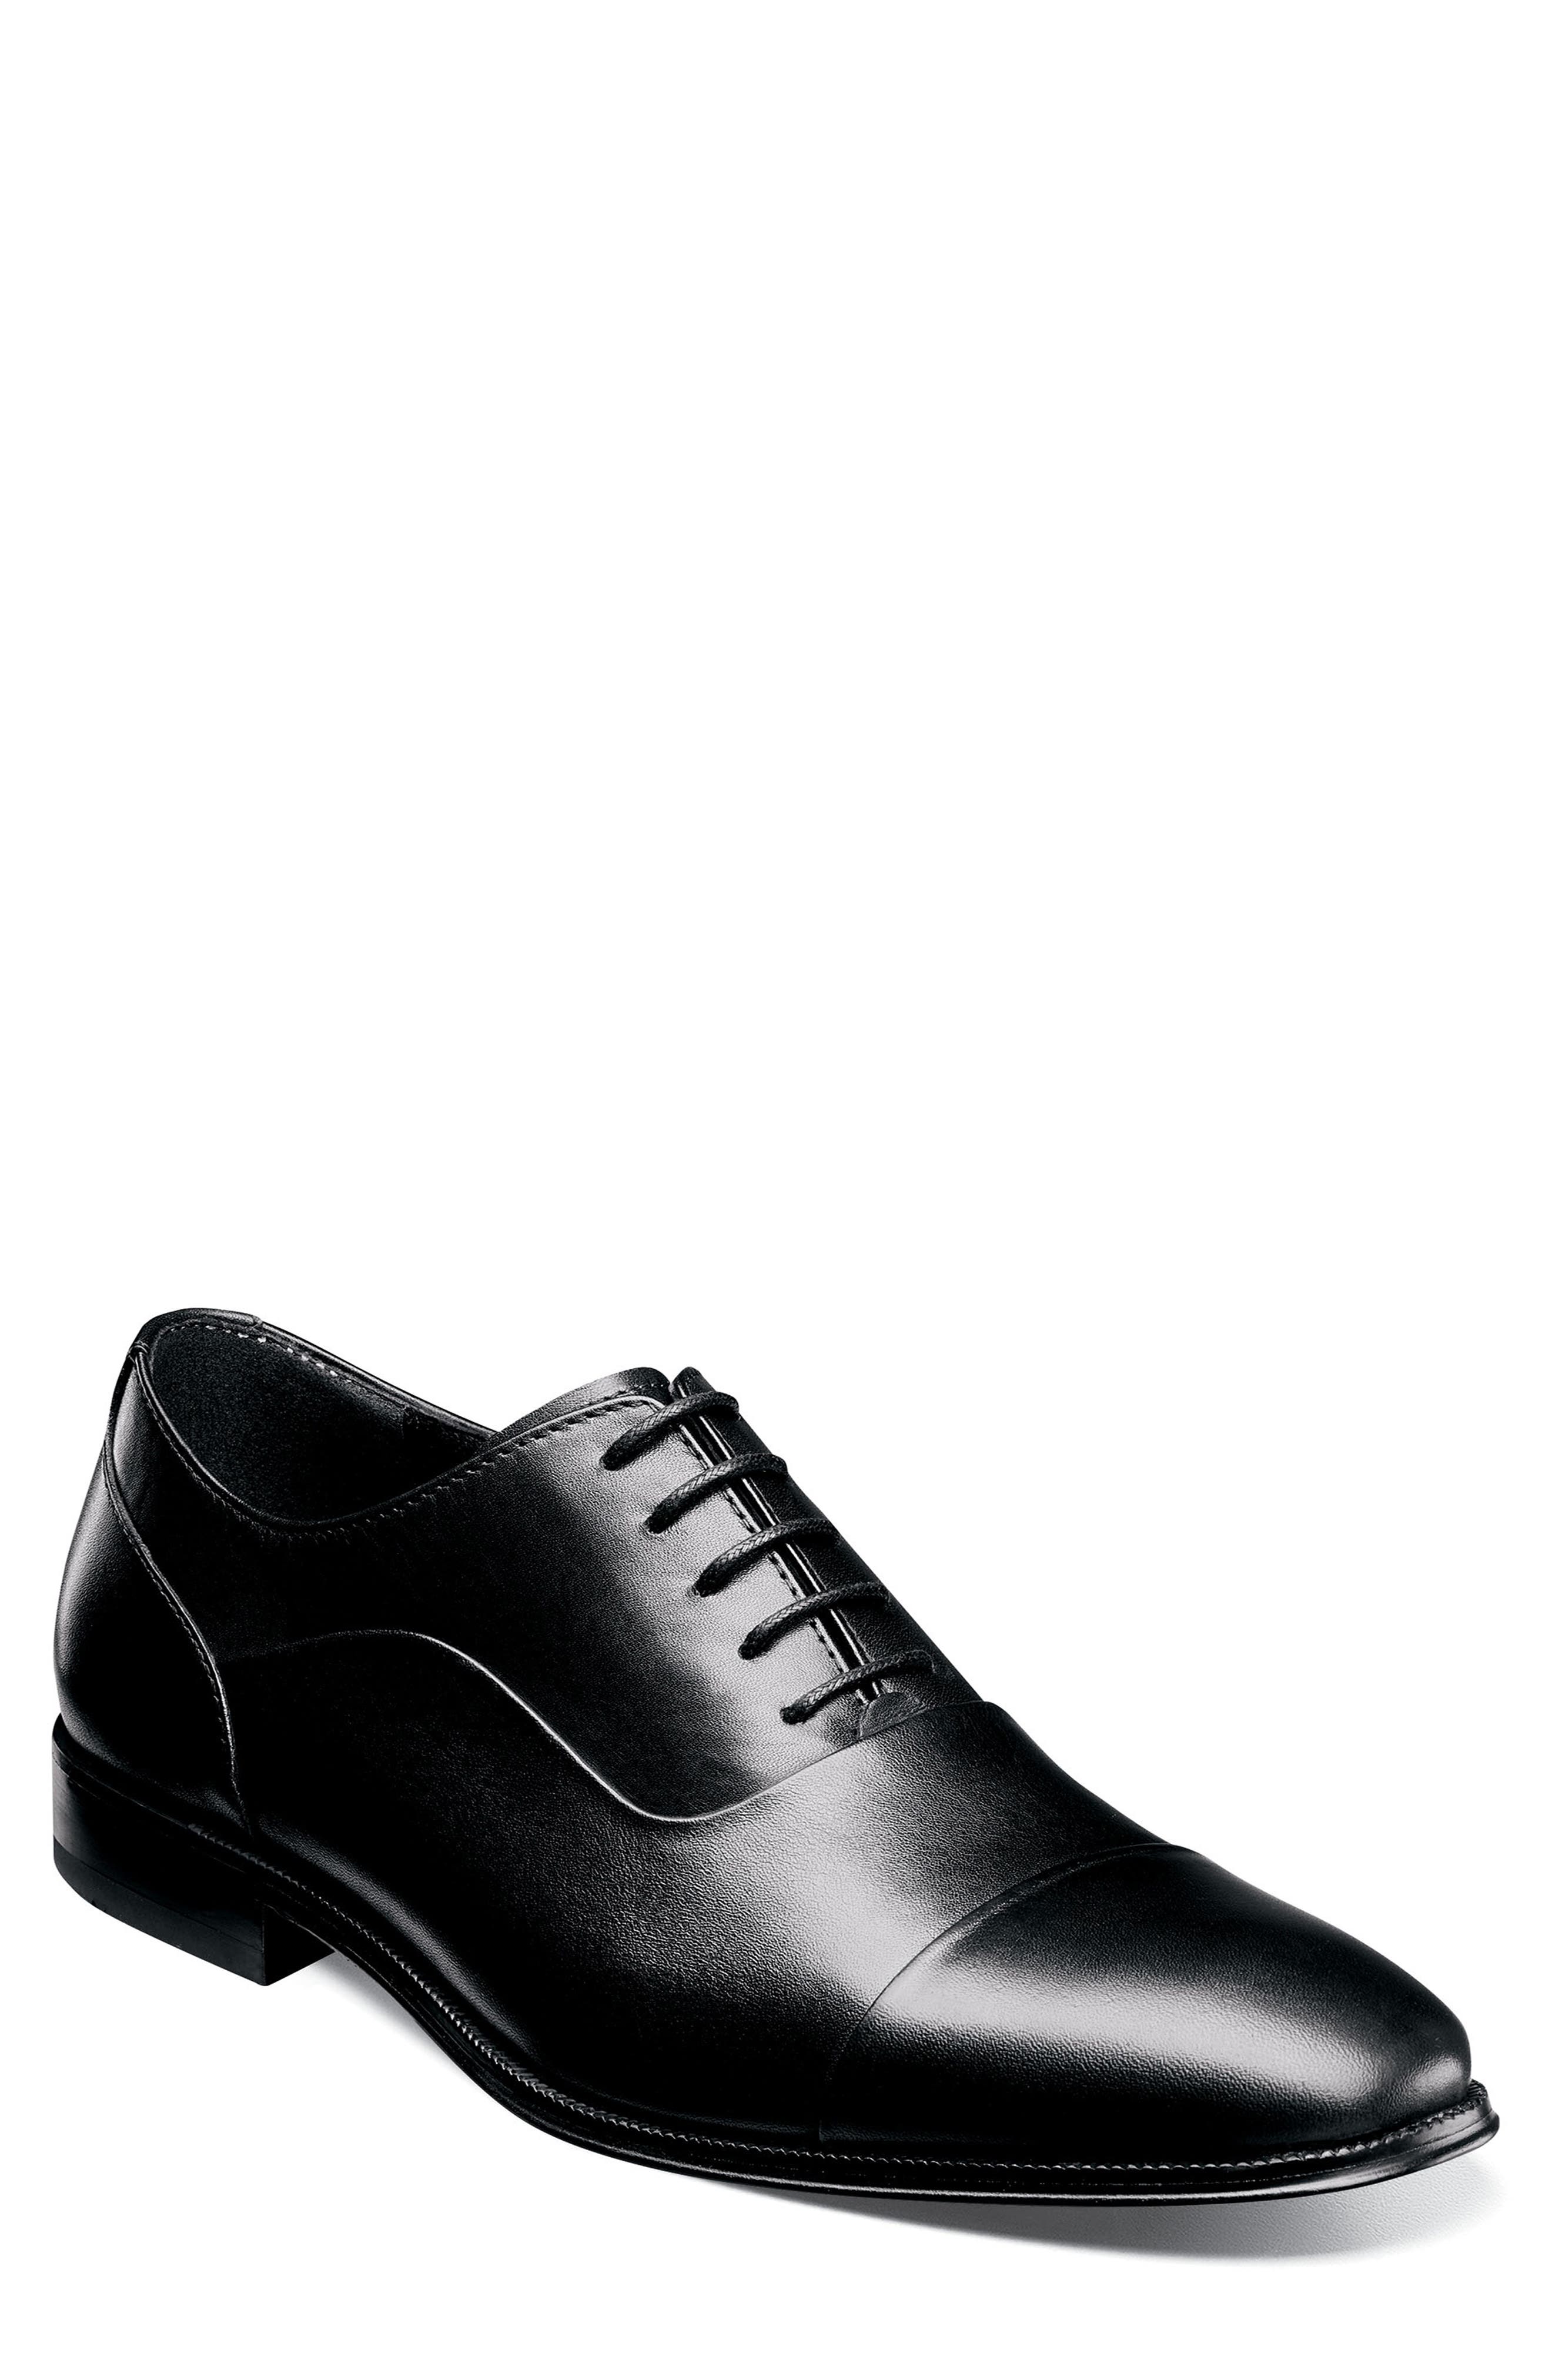 black shoes mens